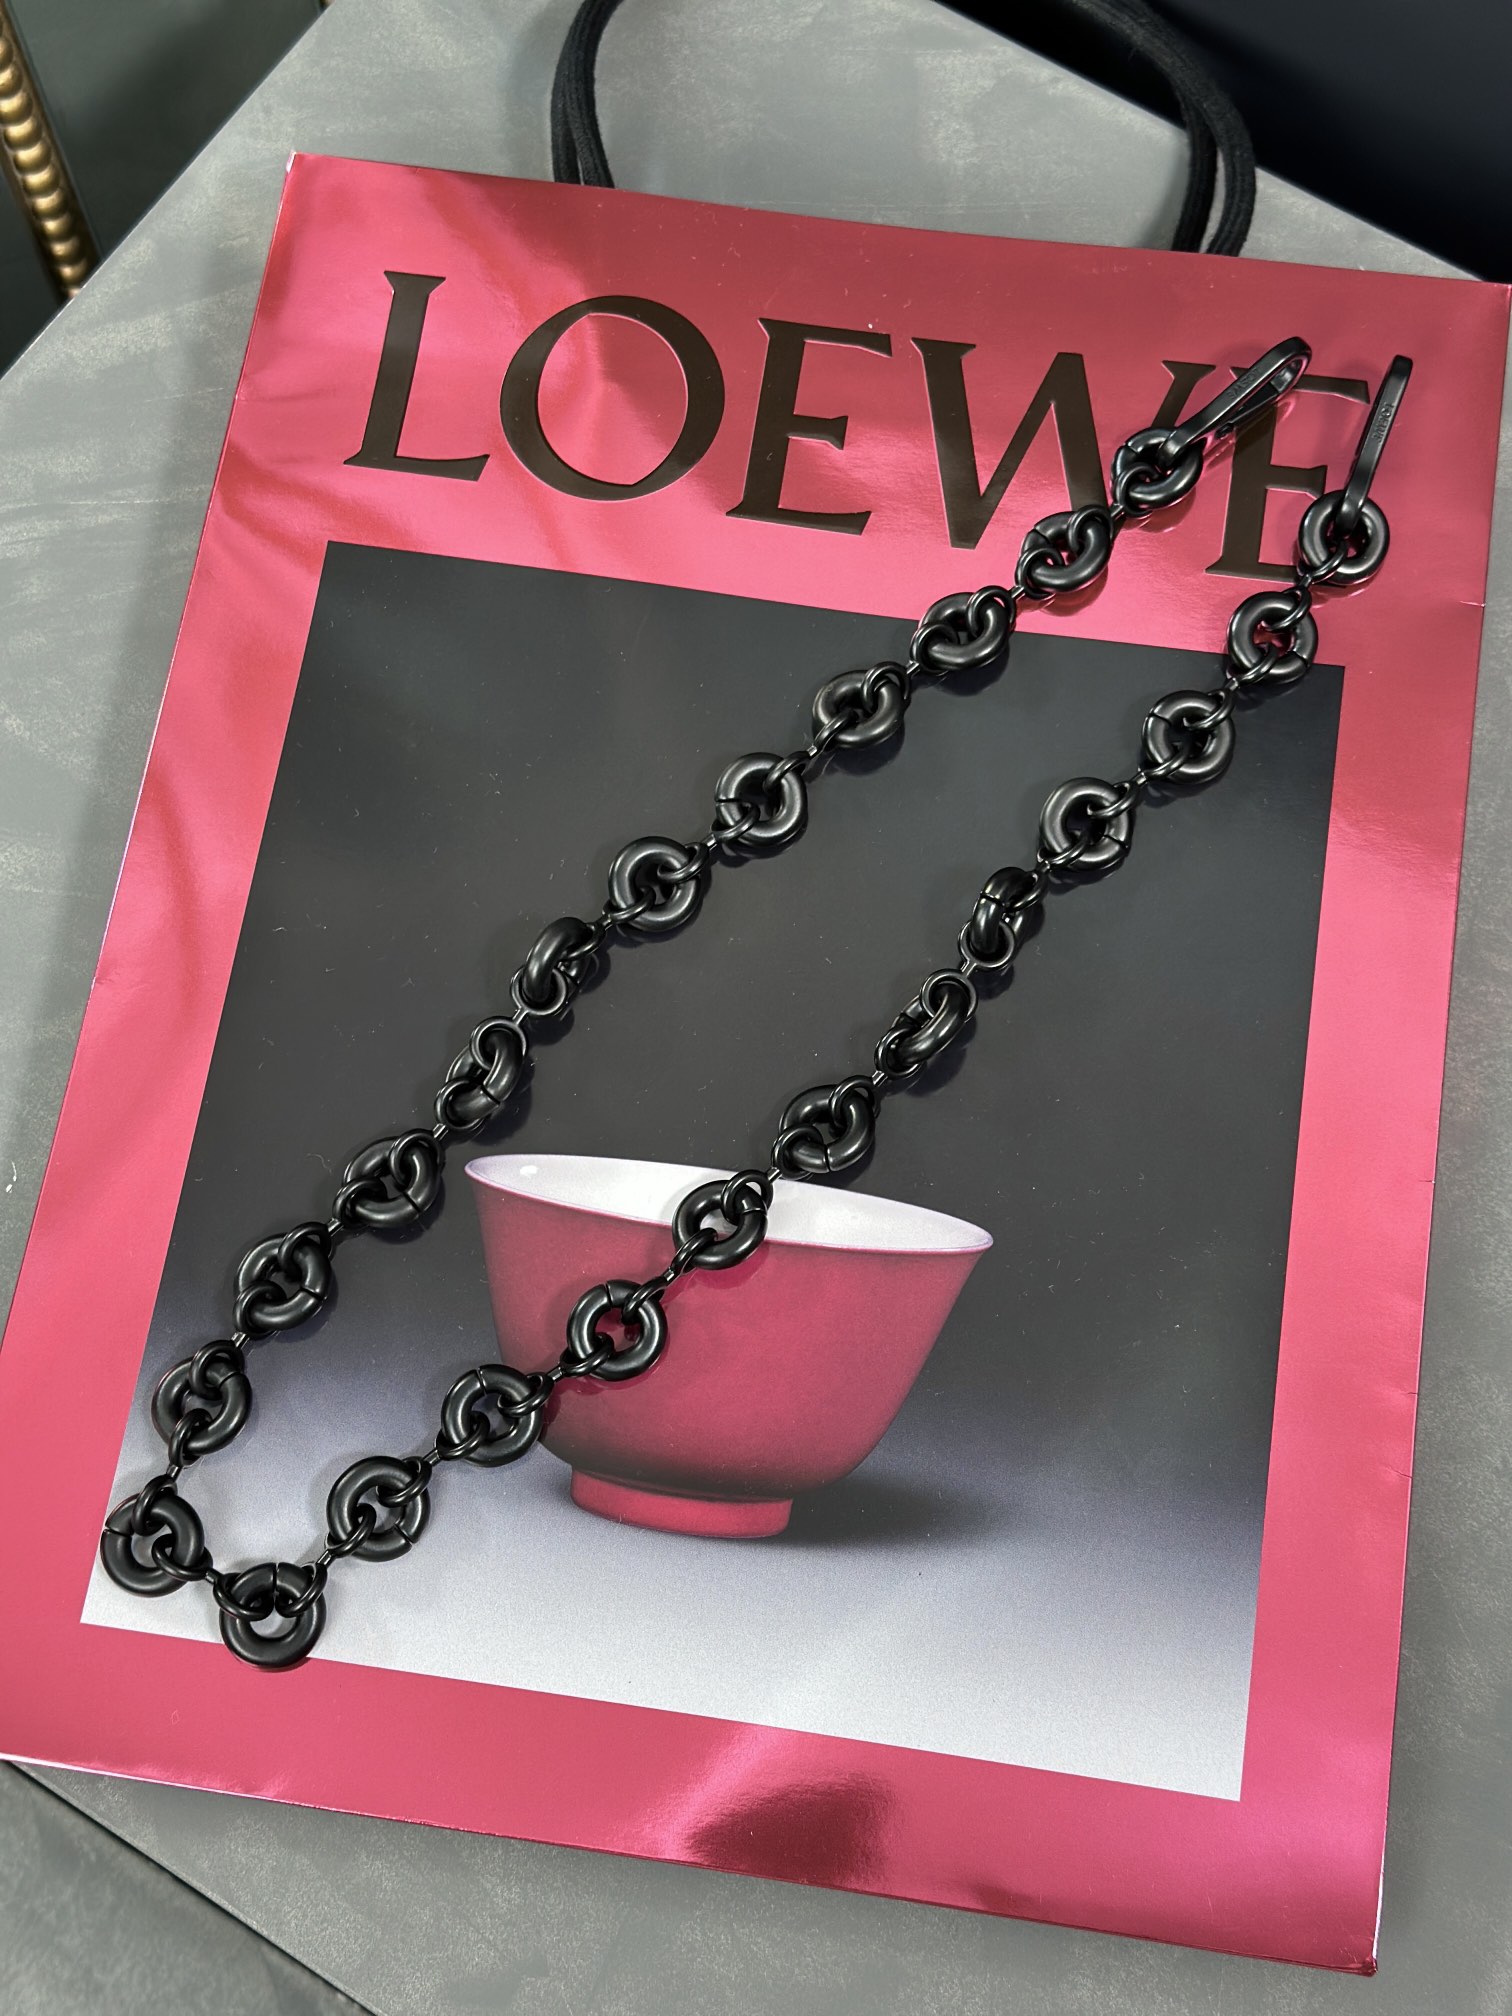 Copy AAA+
 Loewe Flawless
 Bags Handbags Black Chains